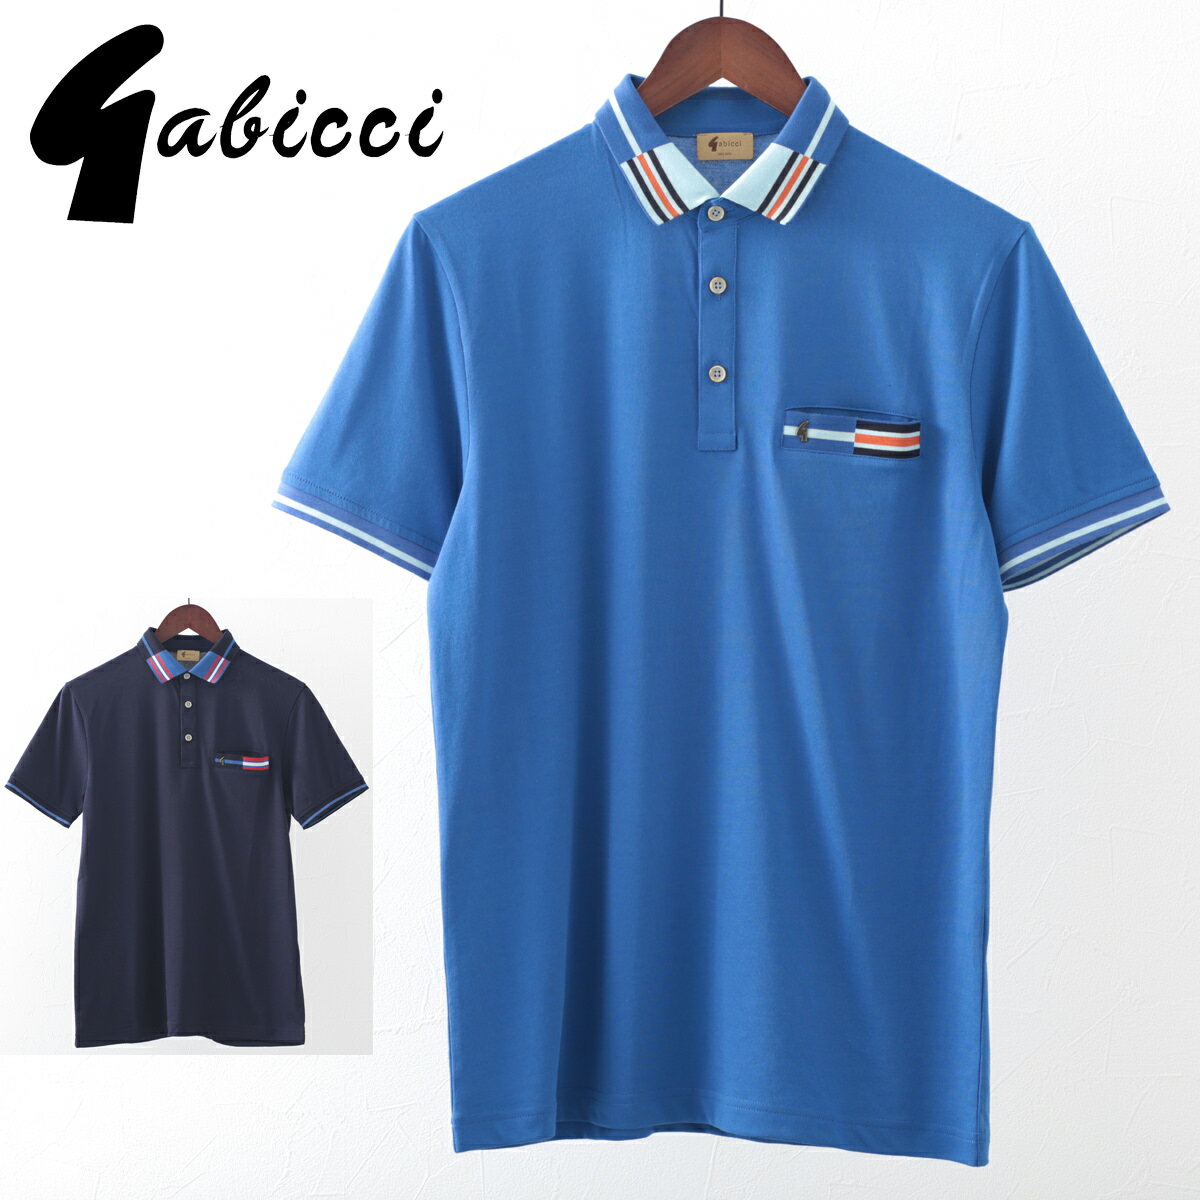 Gabicci メンズ ポロシャツ ポロ ティップライン ガビッチ 20s 2色 コロン ネイビー レトロ モッズファッション ギフト トラッド